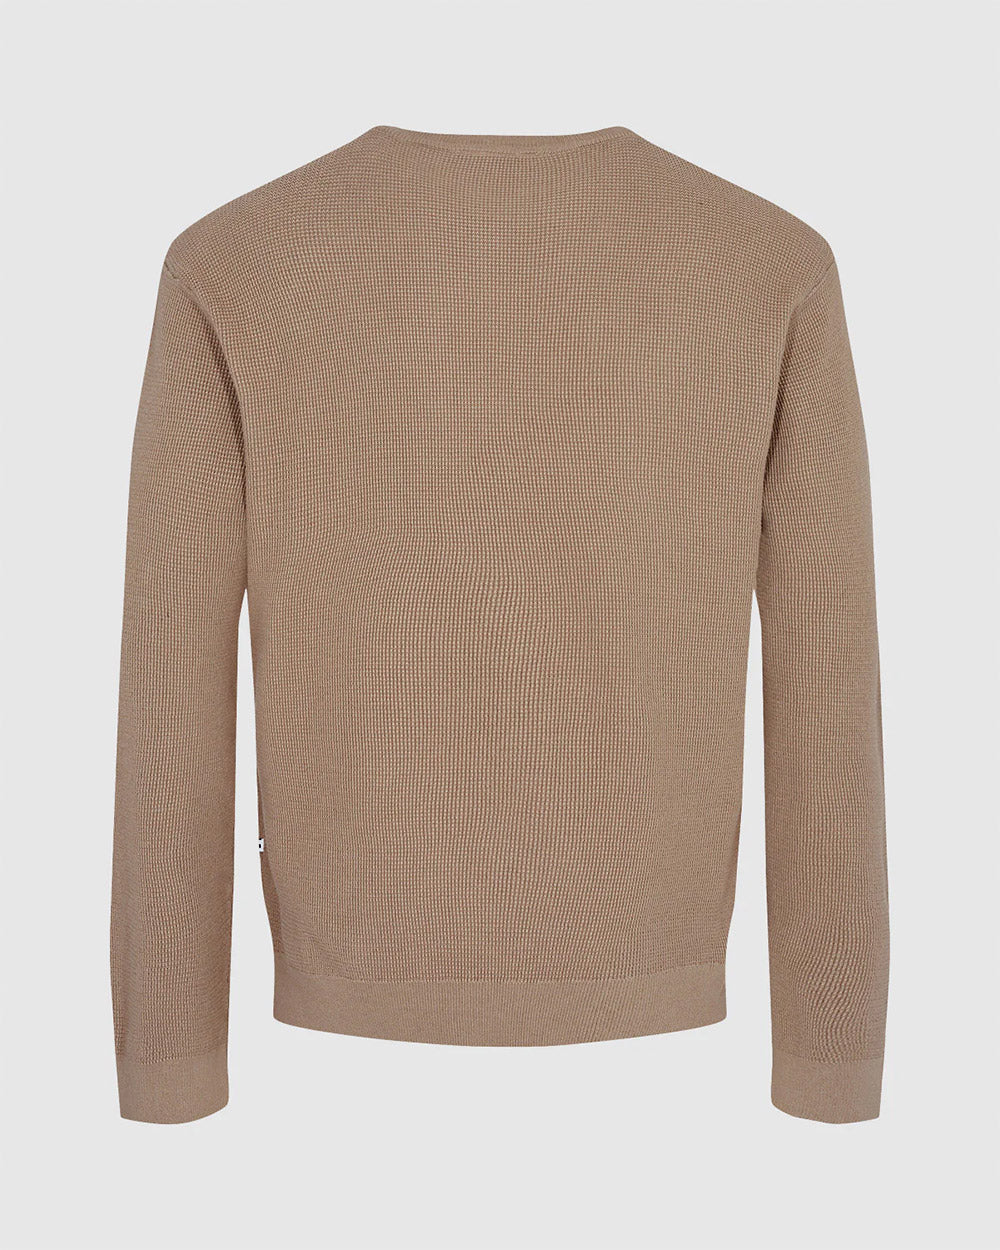 Minimum Jalmar Sweater